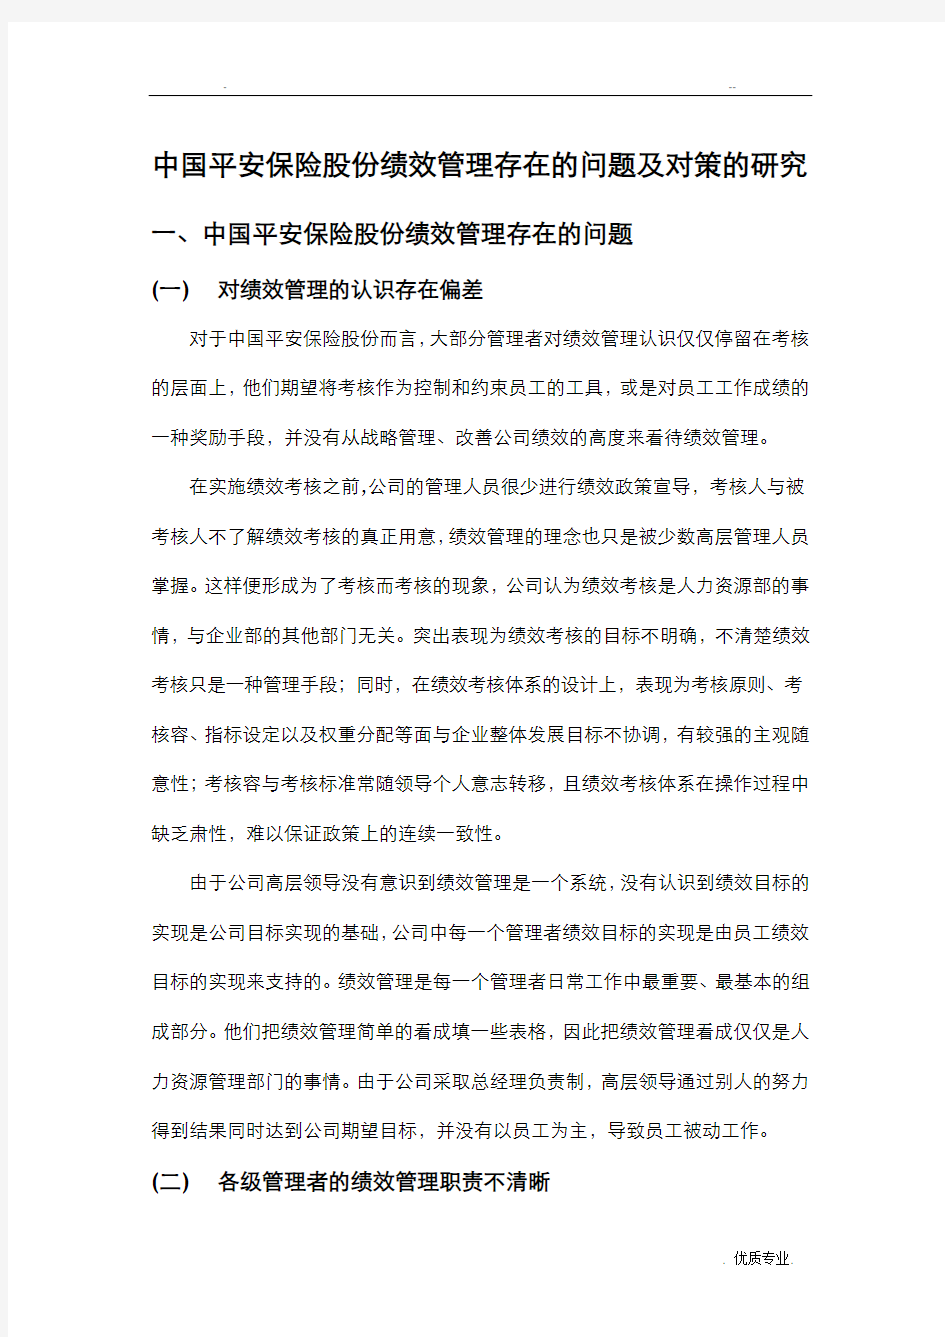 中国平安保险股份有限公司绩效管理存在的问题及对策的研究